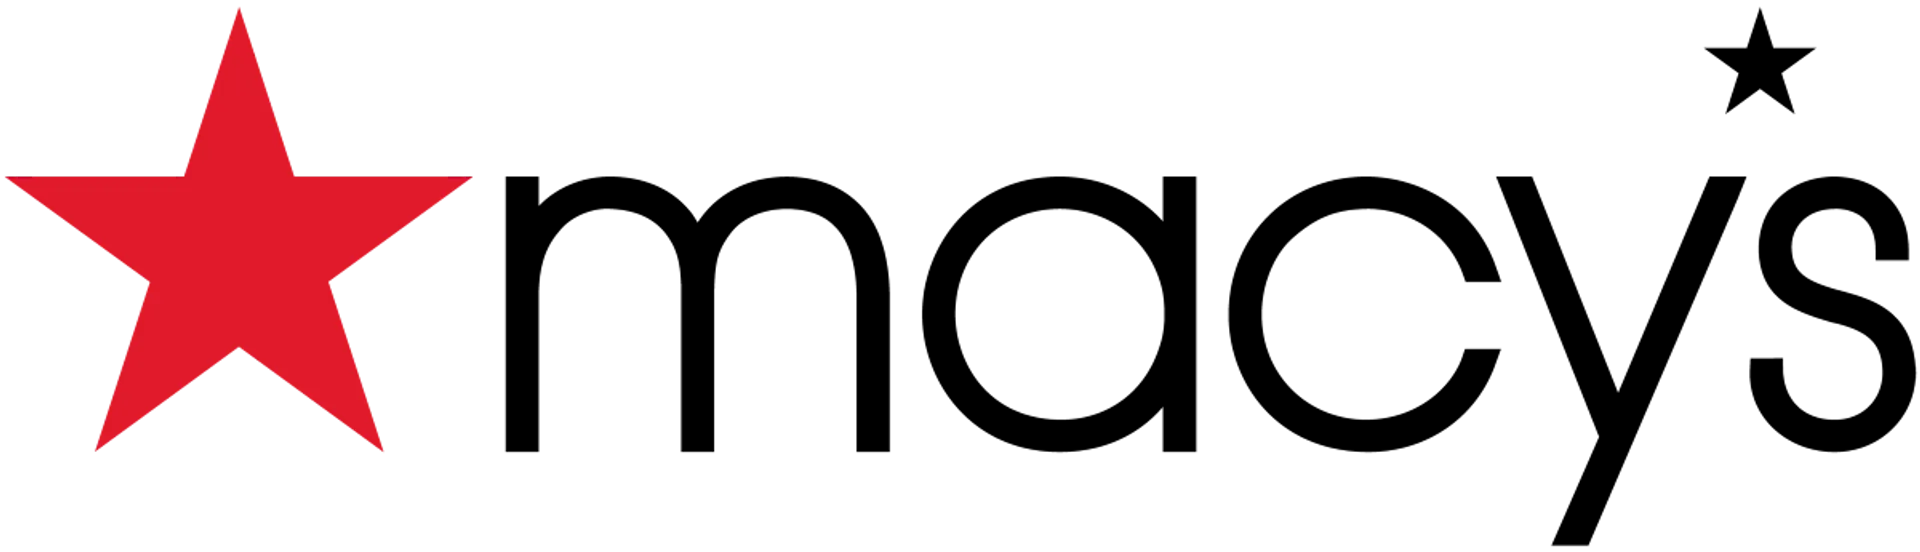 MACY'S logo